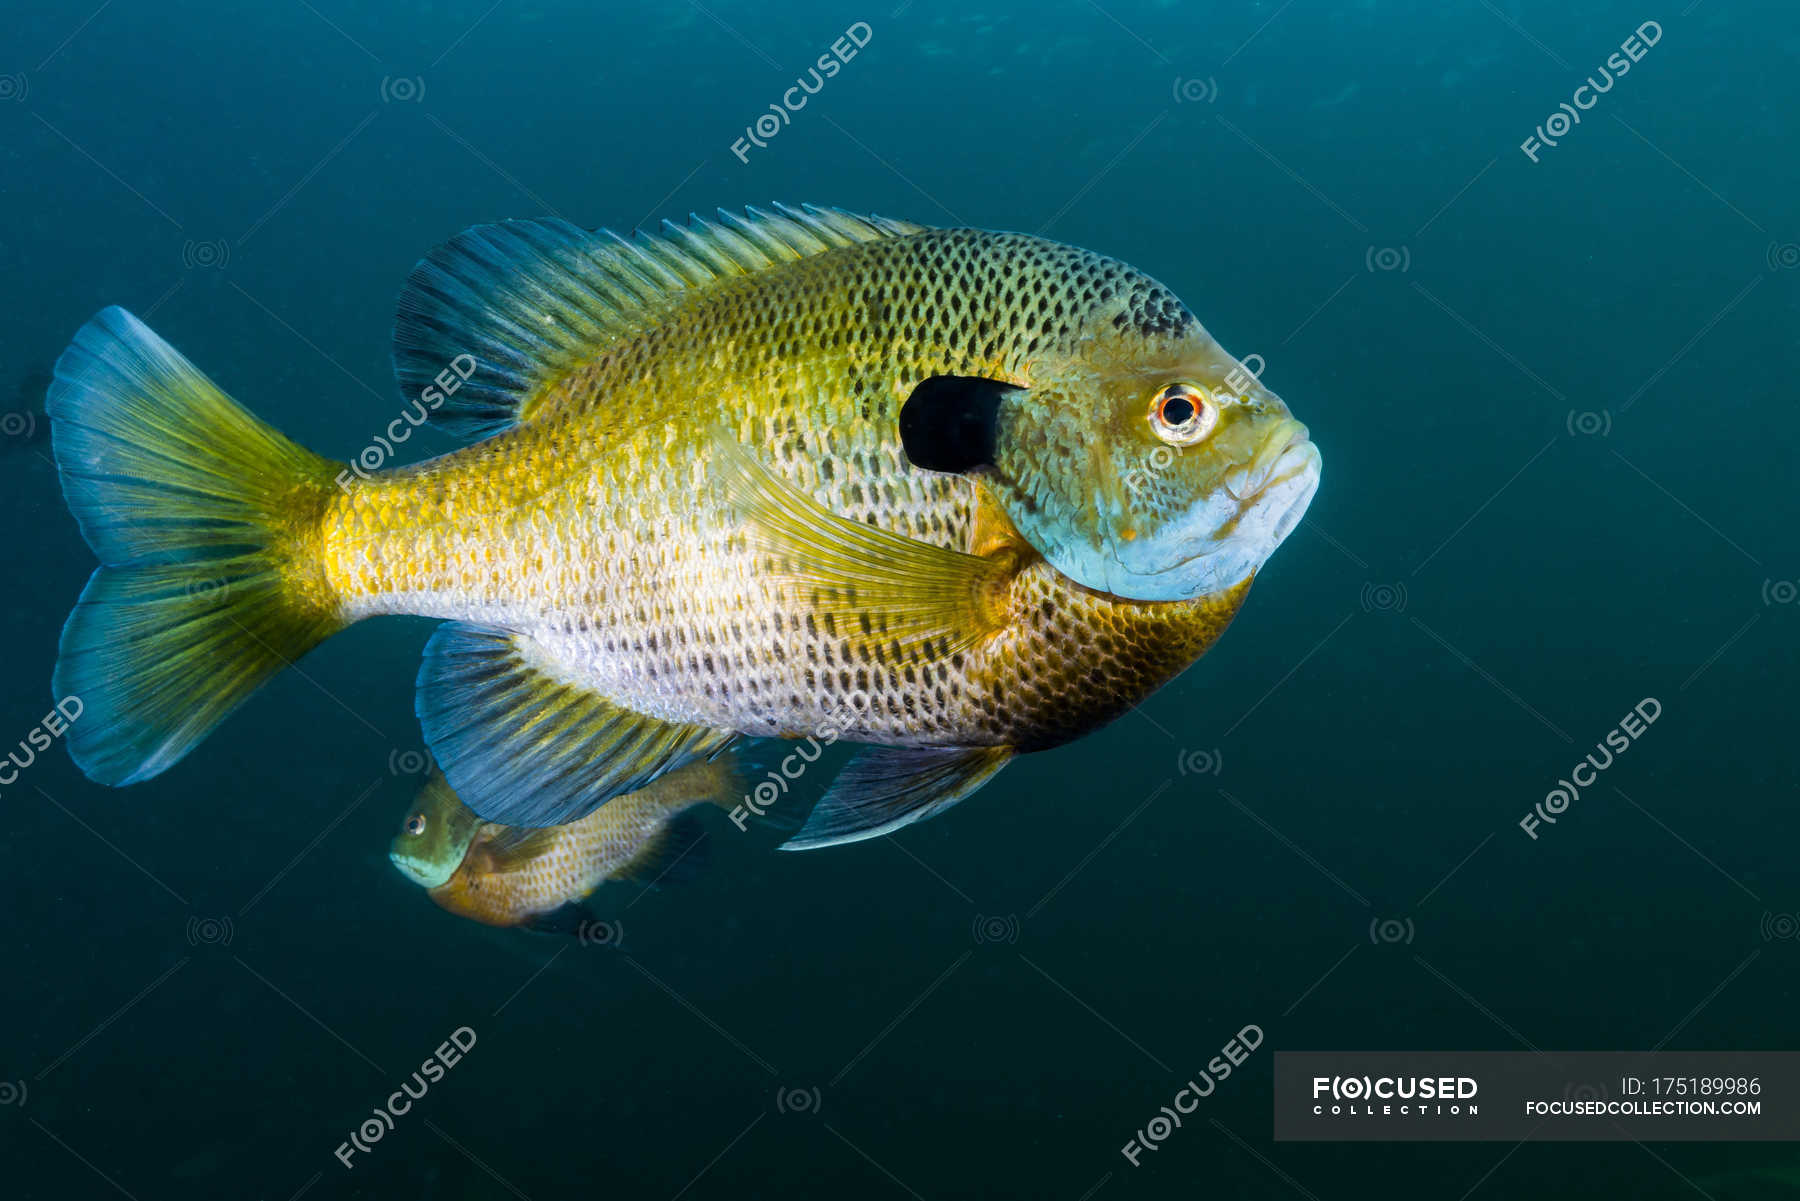 Солнечная рыба Bluegill в темной воде — Желтый, Водные виды - Stock Photo